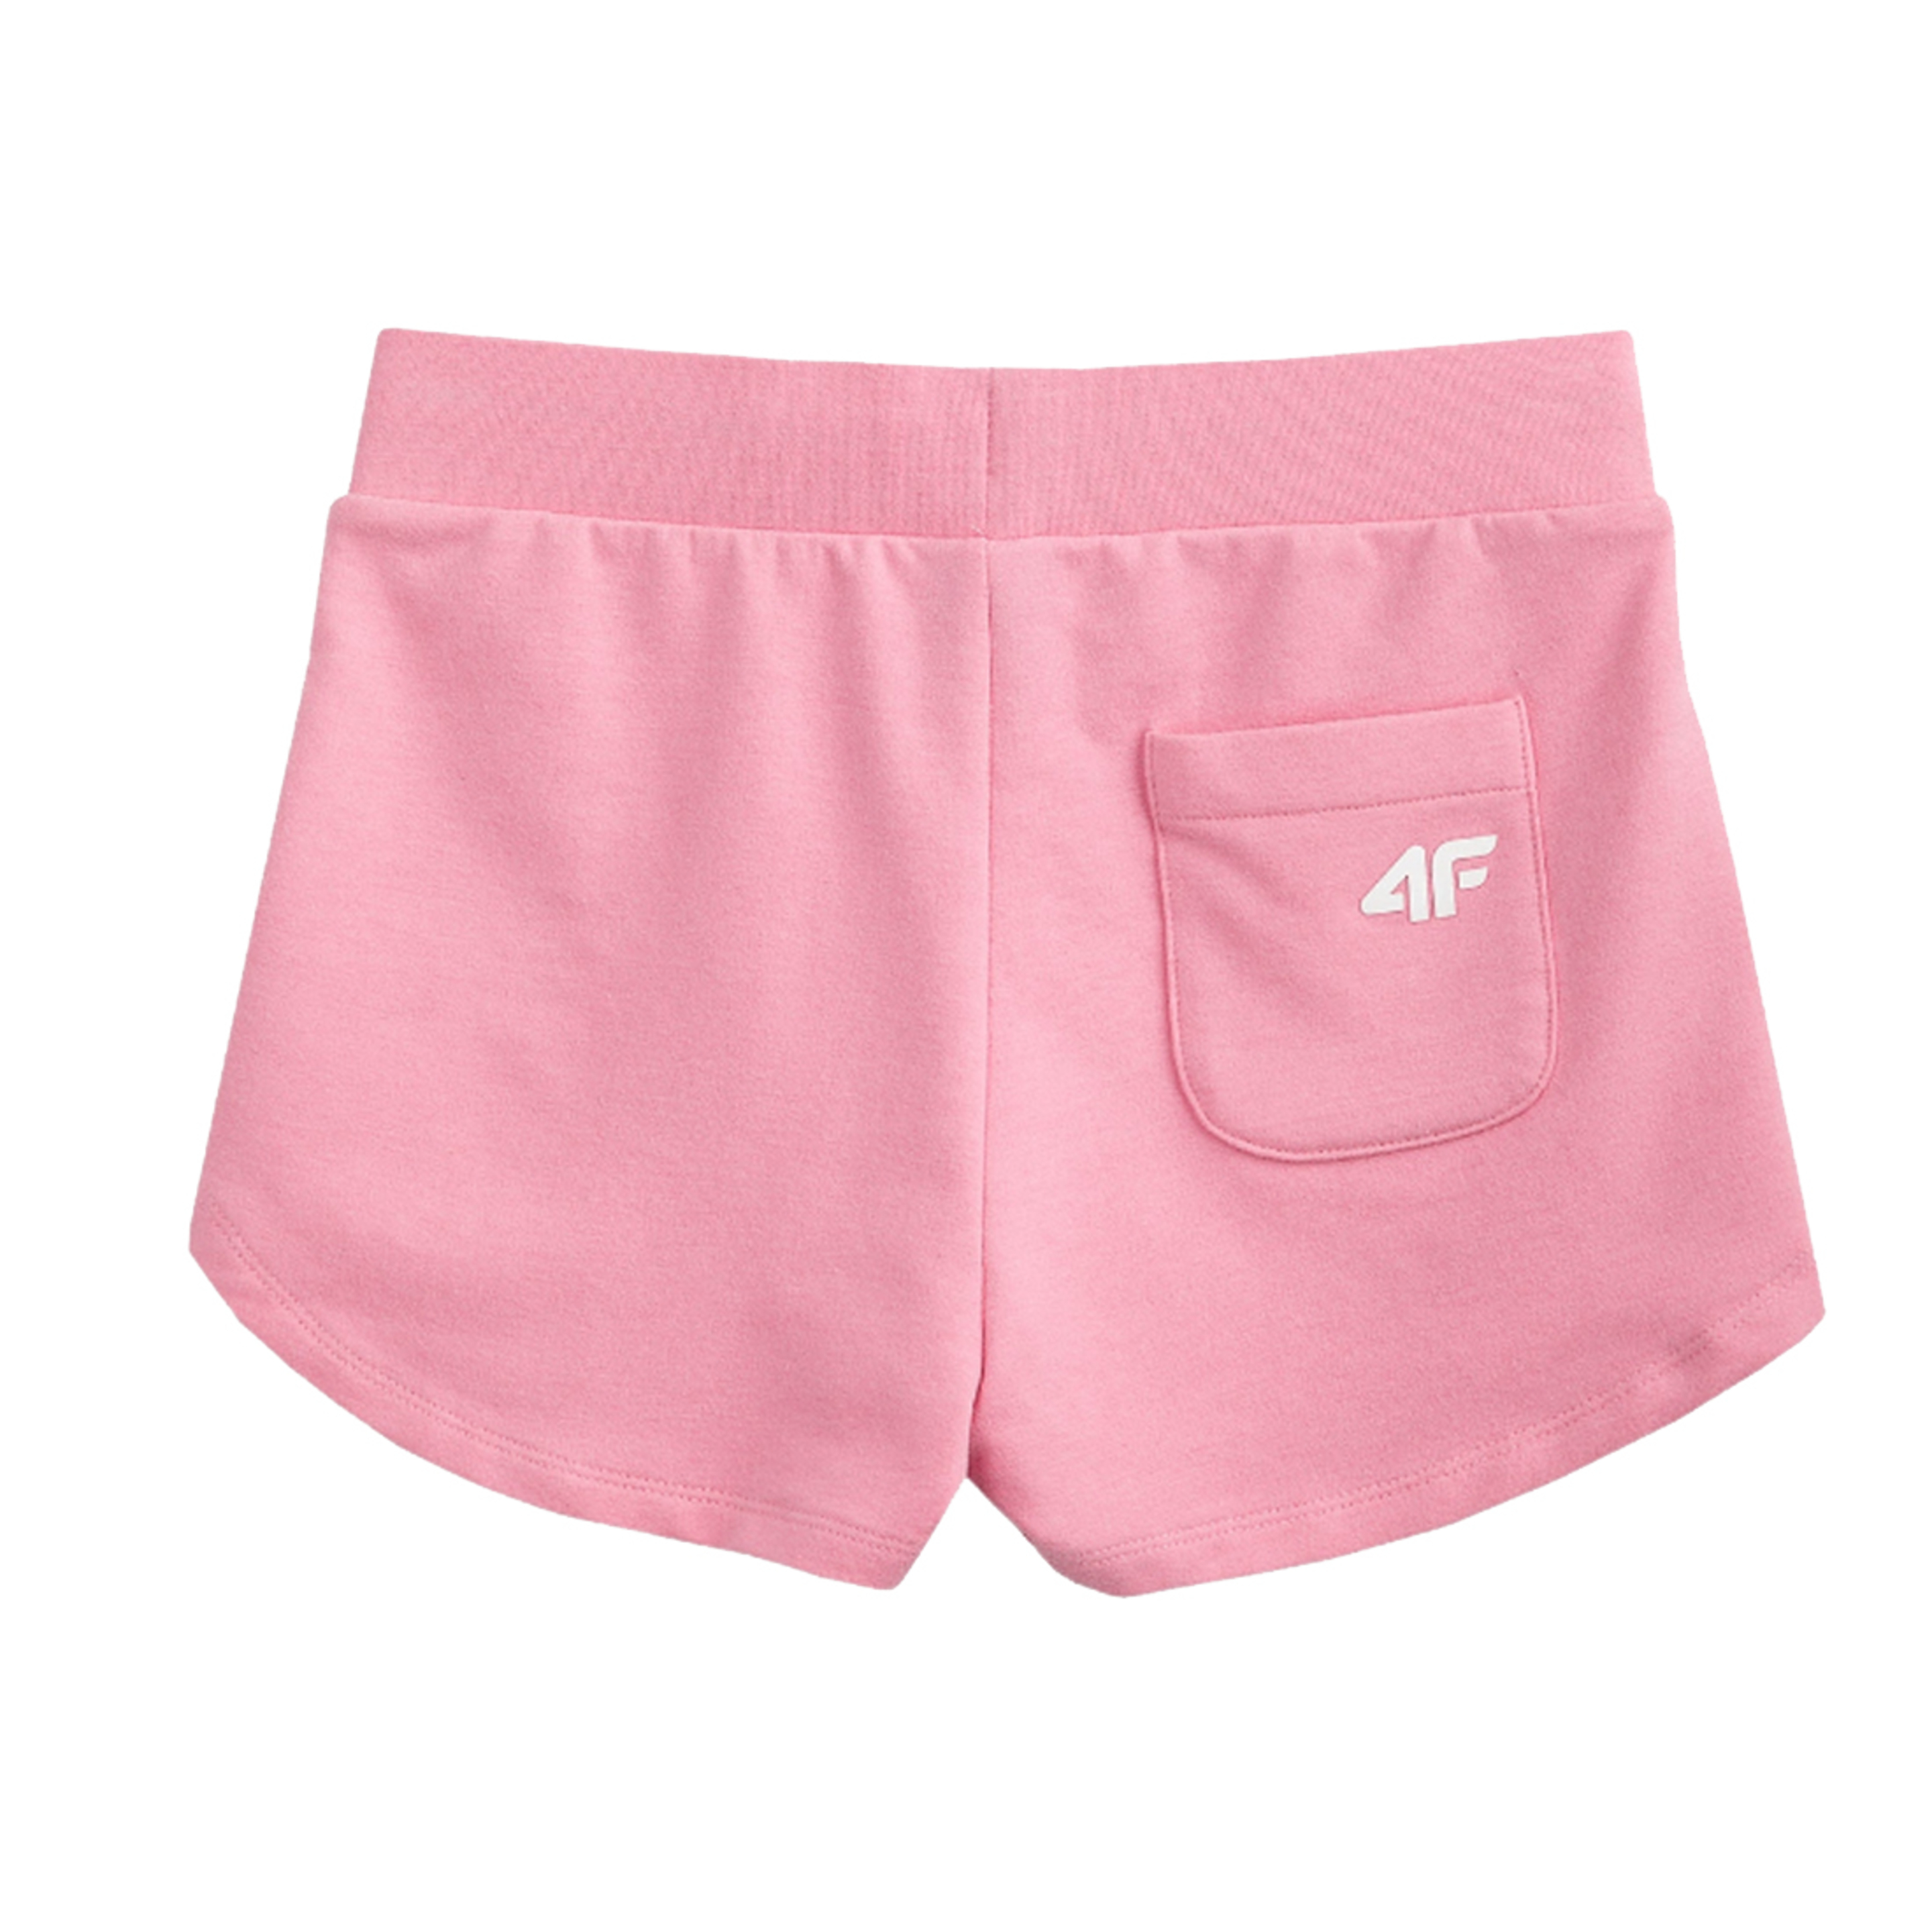 4f Girl's Shorts Hjl20-jskdd001a-54s - rosa - Ni?o, Rosa, Pantalones  MKP